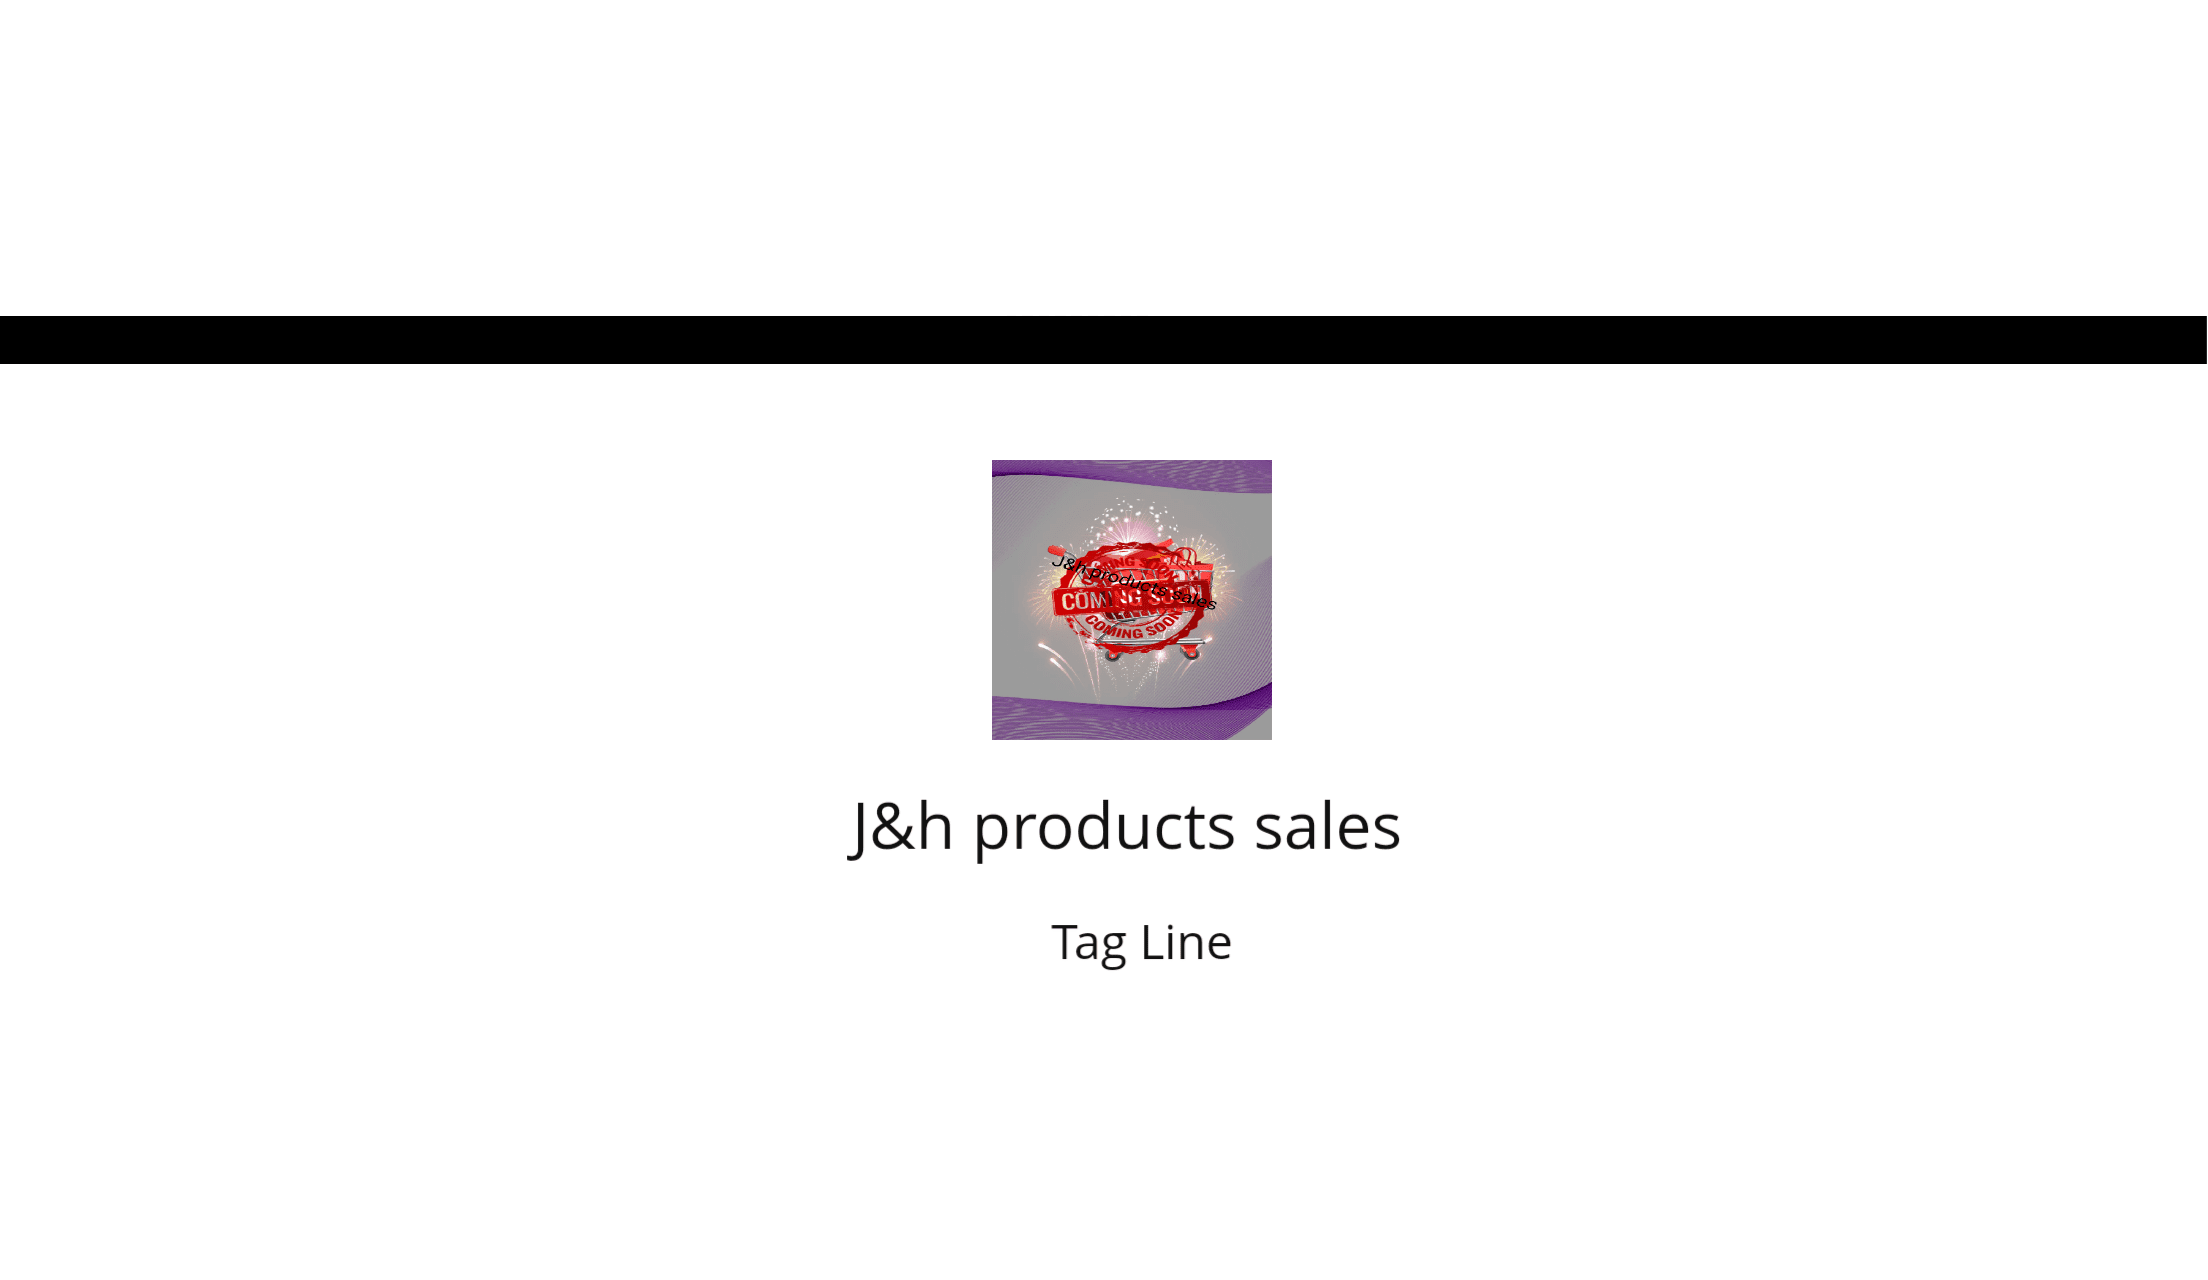 J&H SALES